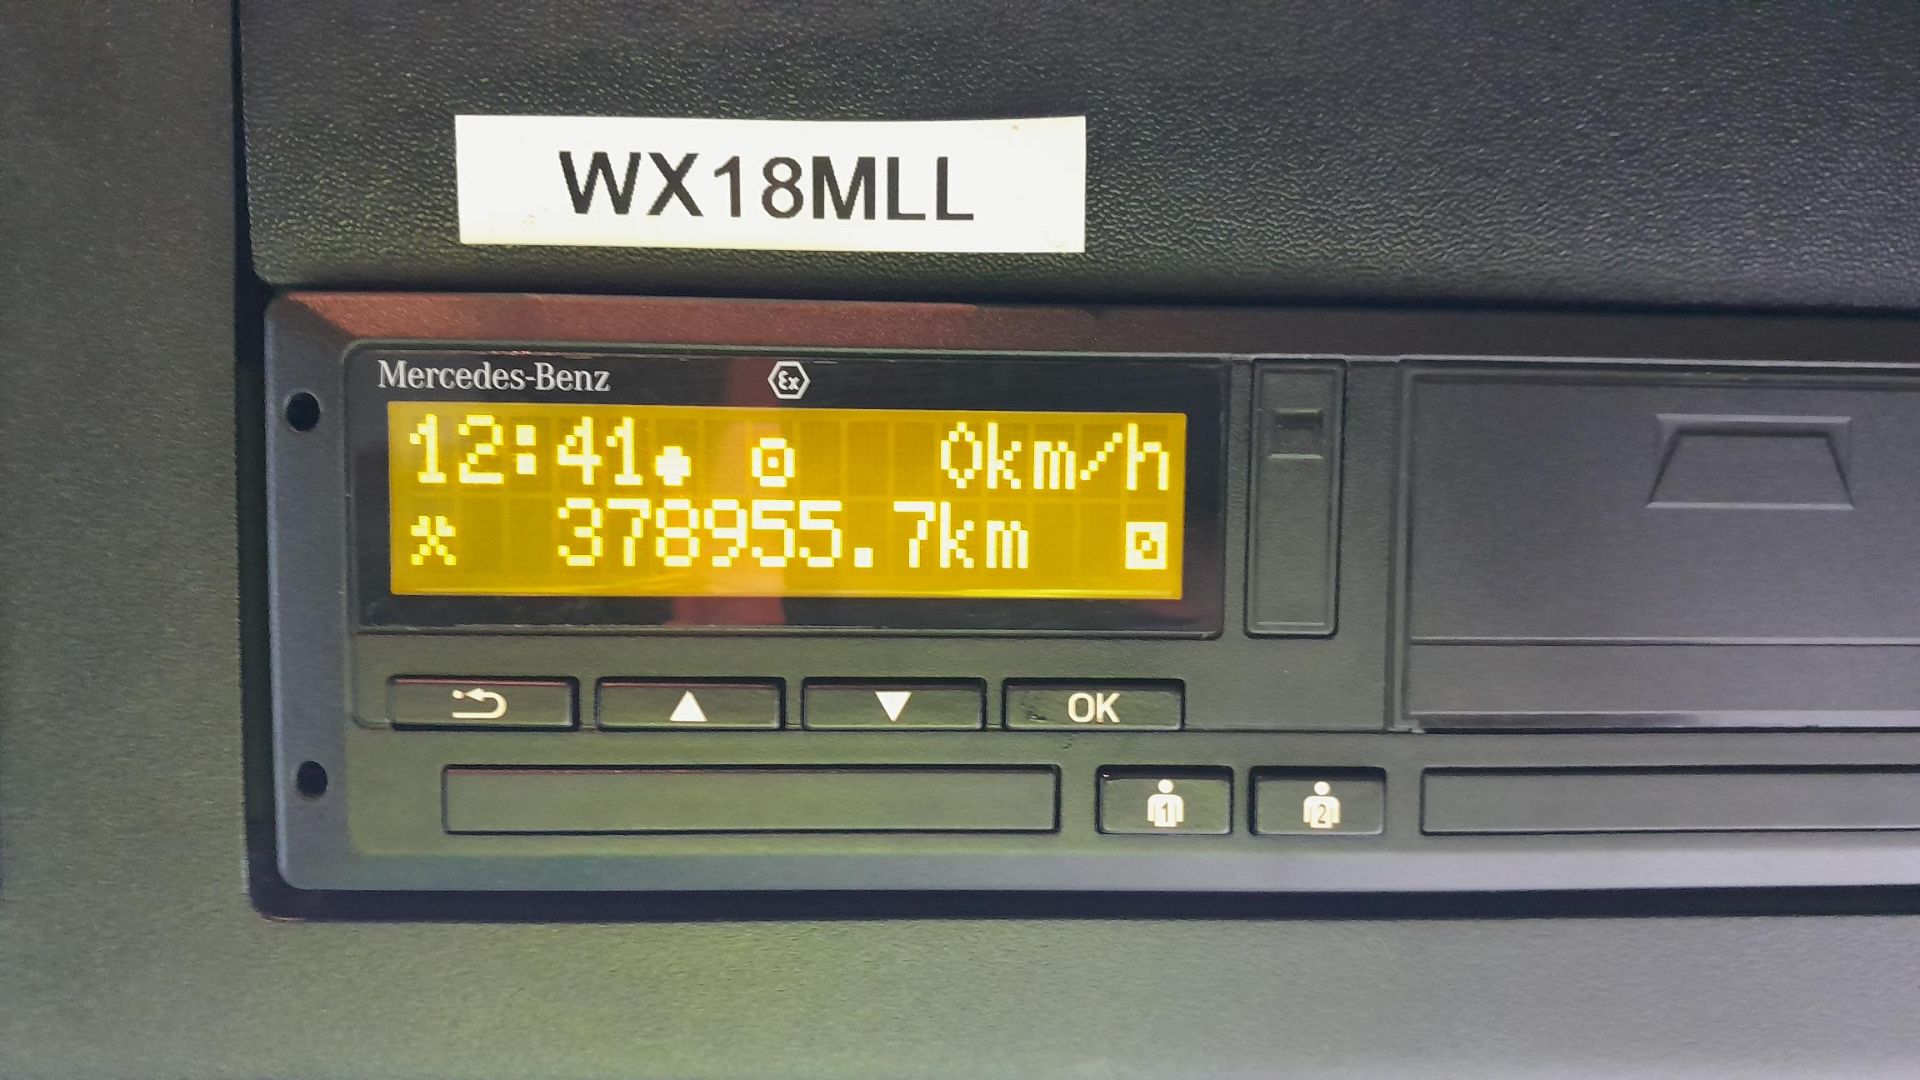 2018, Mercedes-Benz 1824 (VRN - WX18 MLL) - Bild 7 aus 11